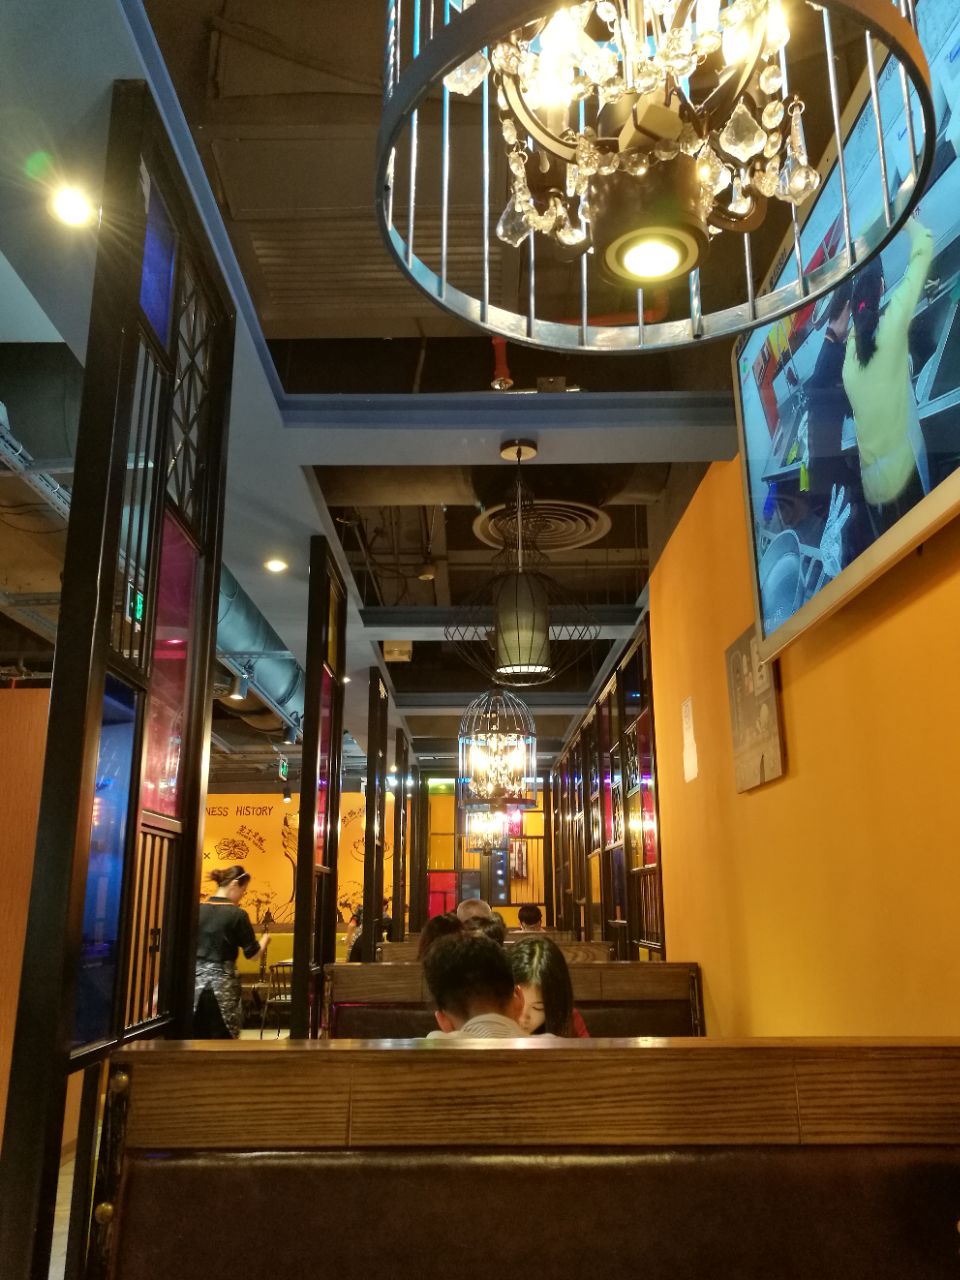 广州澳门街风味餐厅图片